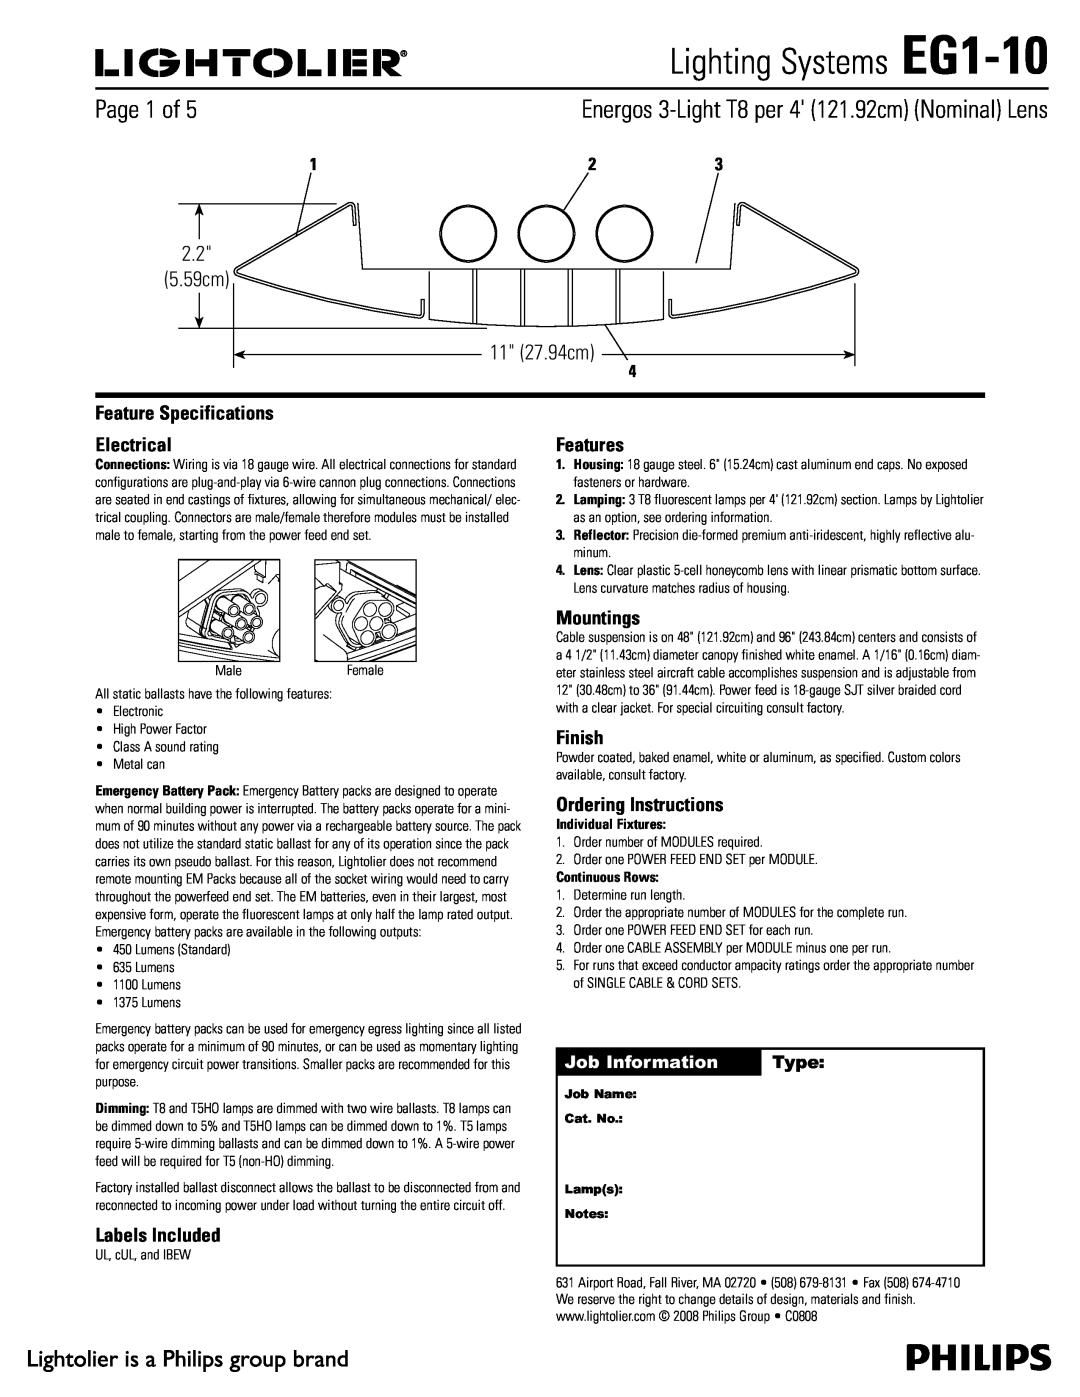 Lightolier specifications Lighting Systems EG1-10,  Dn  Dn, Job Information, Type 